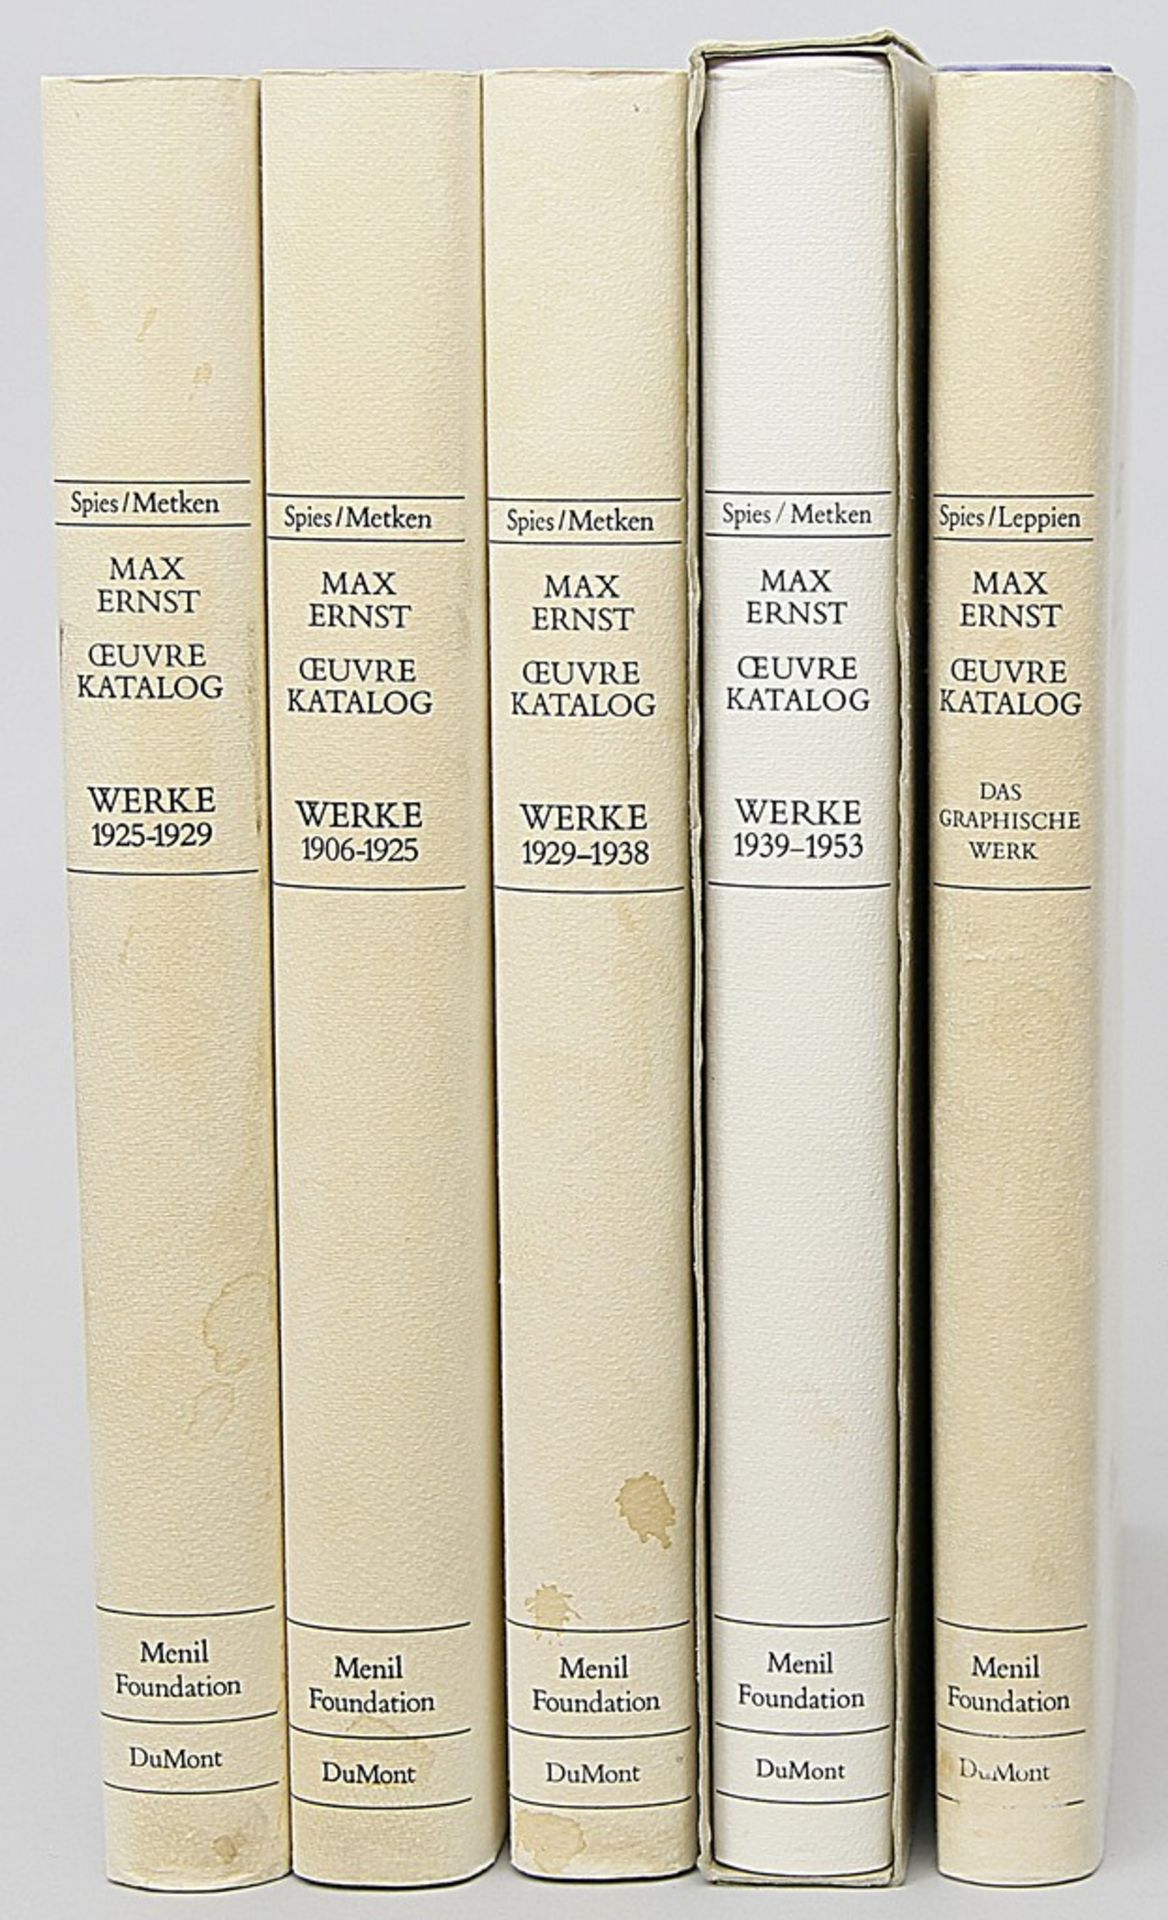 Fünf Bände "Oeuvre Max Ernst" Band 1906-1925, 1925-1929, 1929-1938 und 1938-1953 bzw